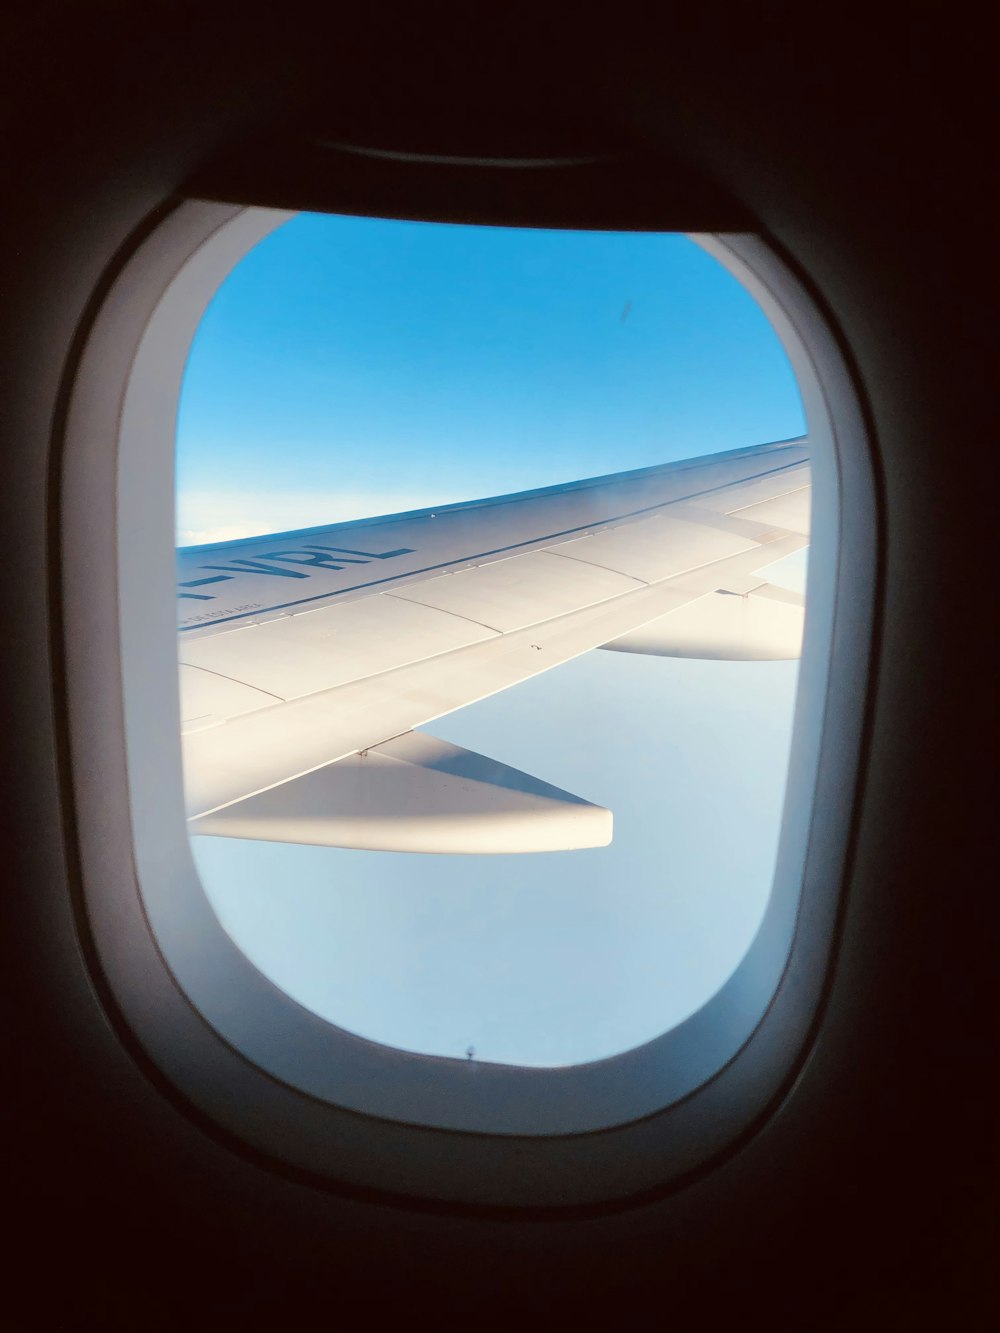 vista da janela do avião da asa do avião